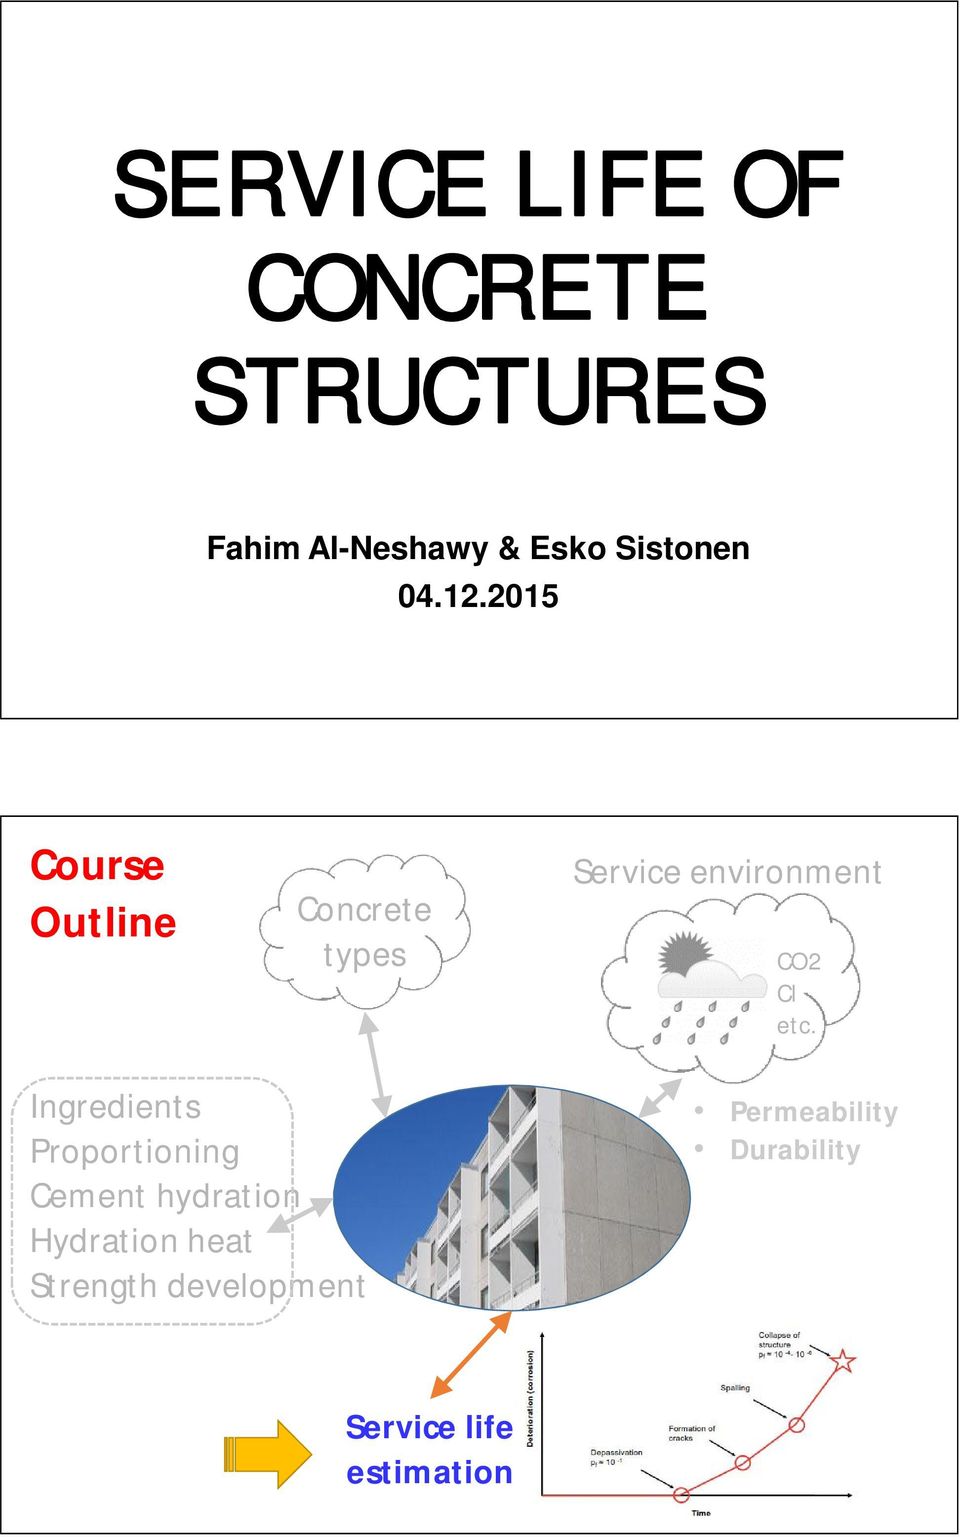 2015 Course Outline Concrete types Service environment CO2 Cl etc.